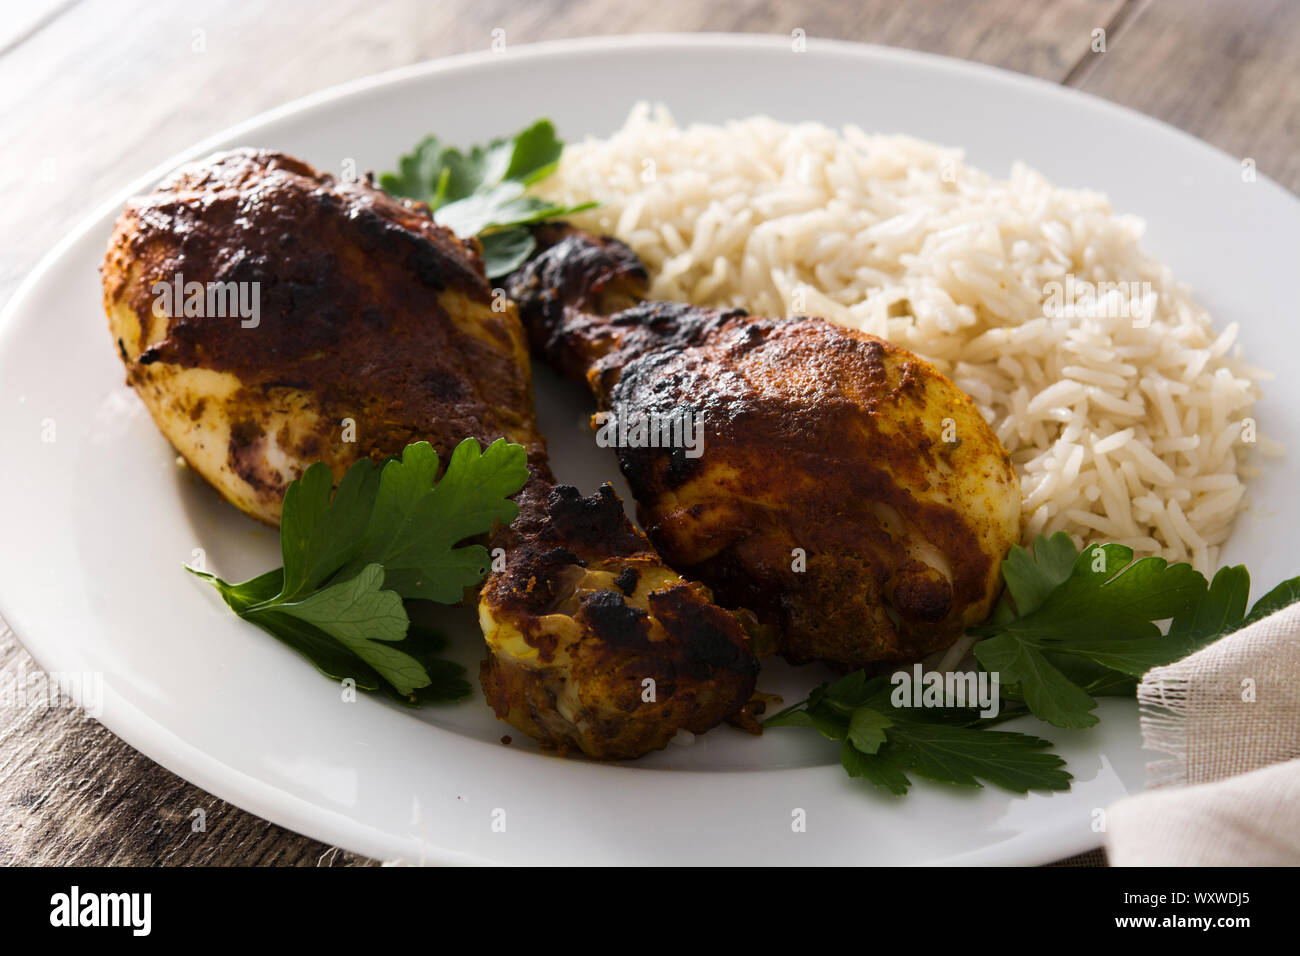 Poulet tandoori grillés avec du riz basmati en plaque sur les tables en bois. Banque D'Images